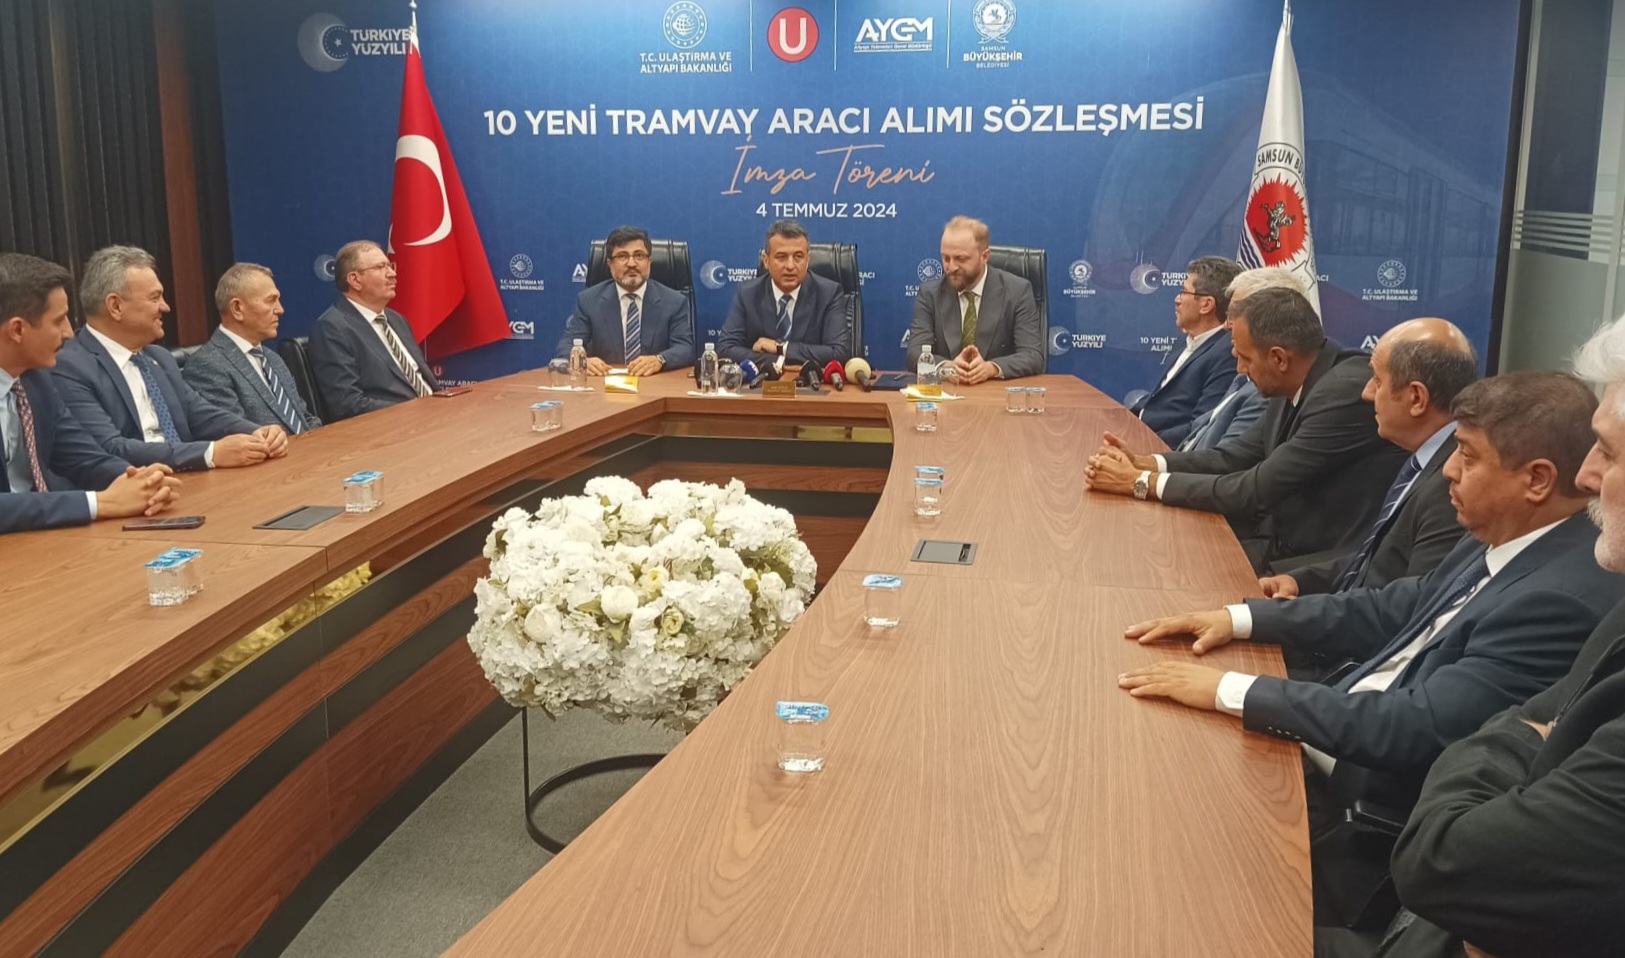 Samsun'a tramvay alım sözleşmesi imzalanıyor